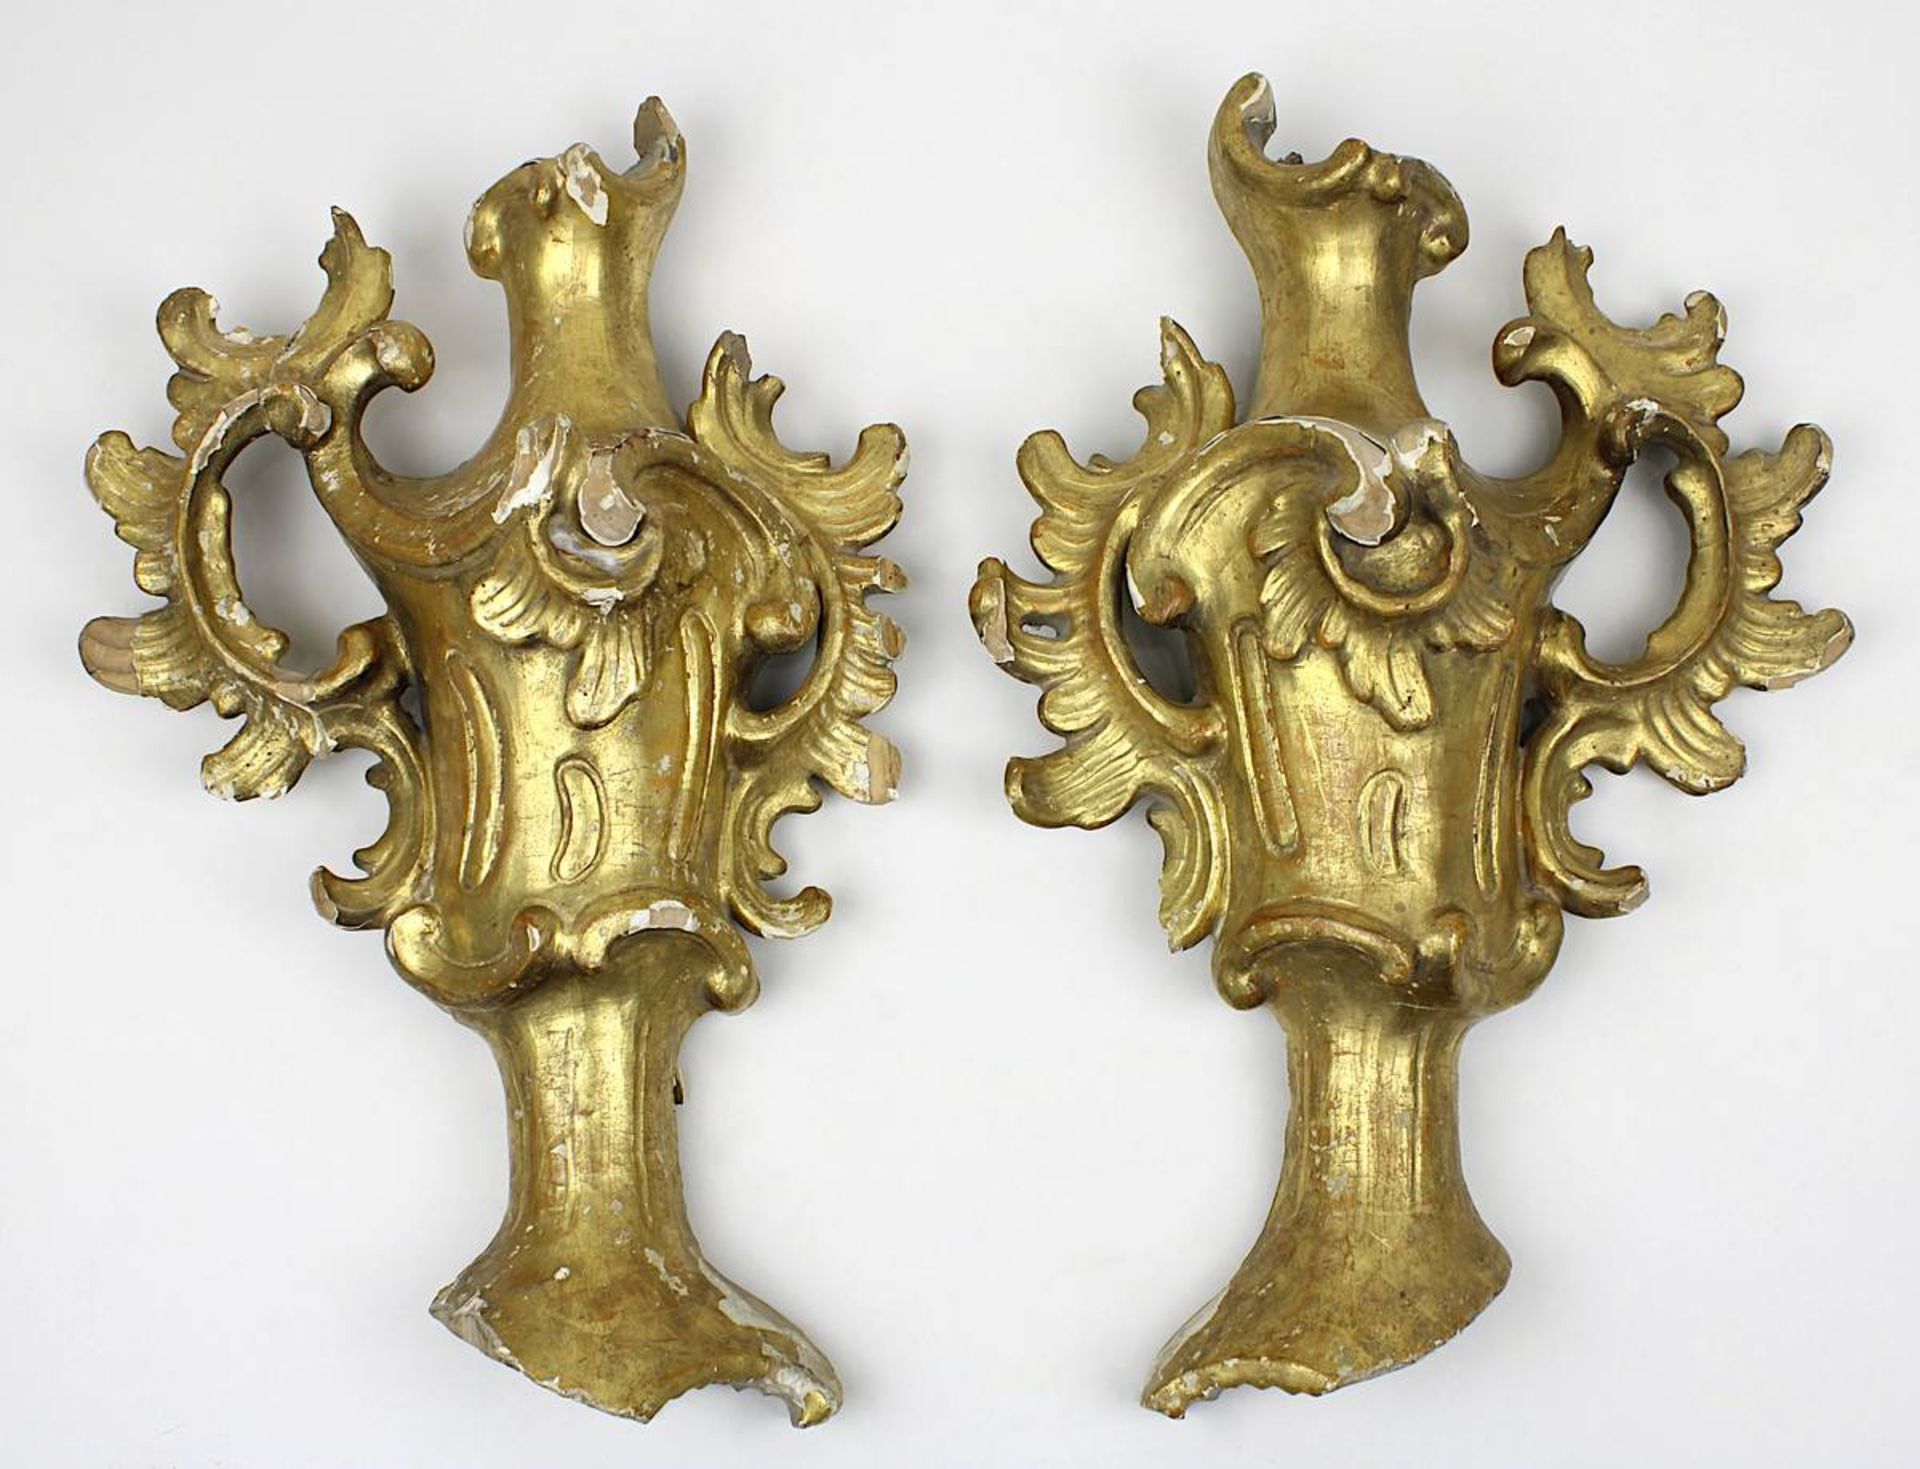 Paar geschnitzte Ziervasen, 2. H. 18. Jh., Lindenholz, vergoldet, halbrund geschnitzt, im Rokoko